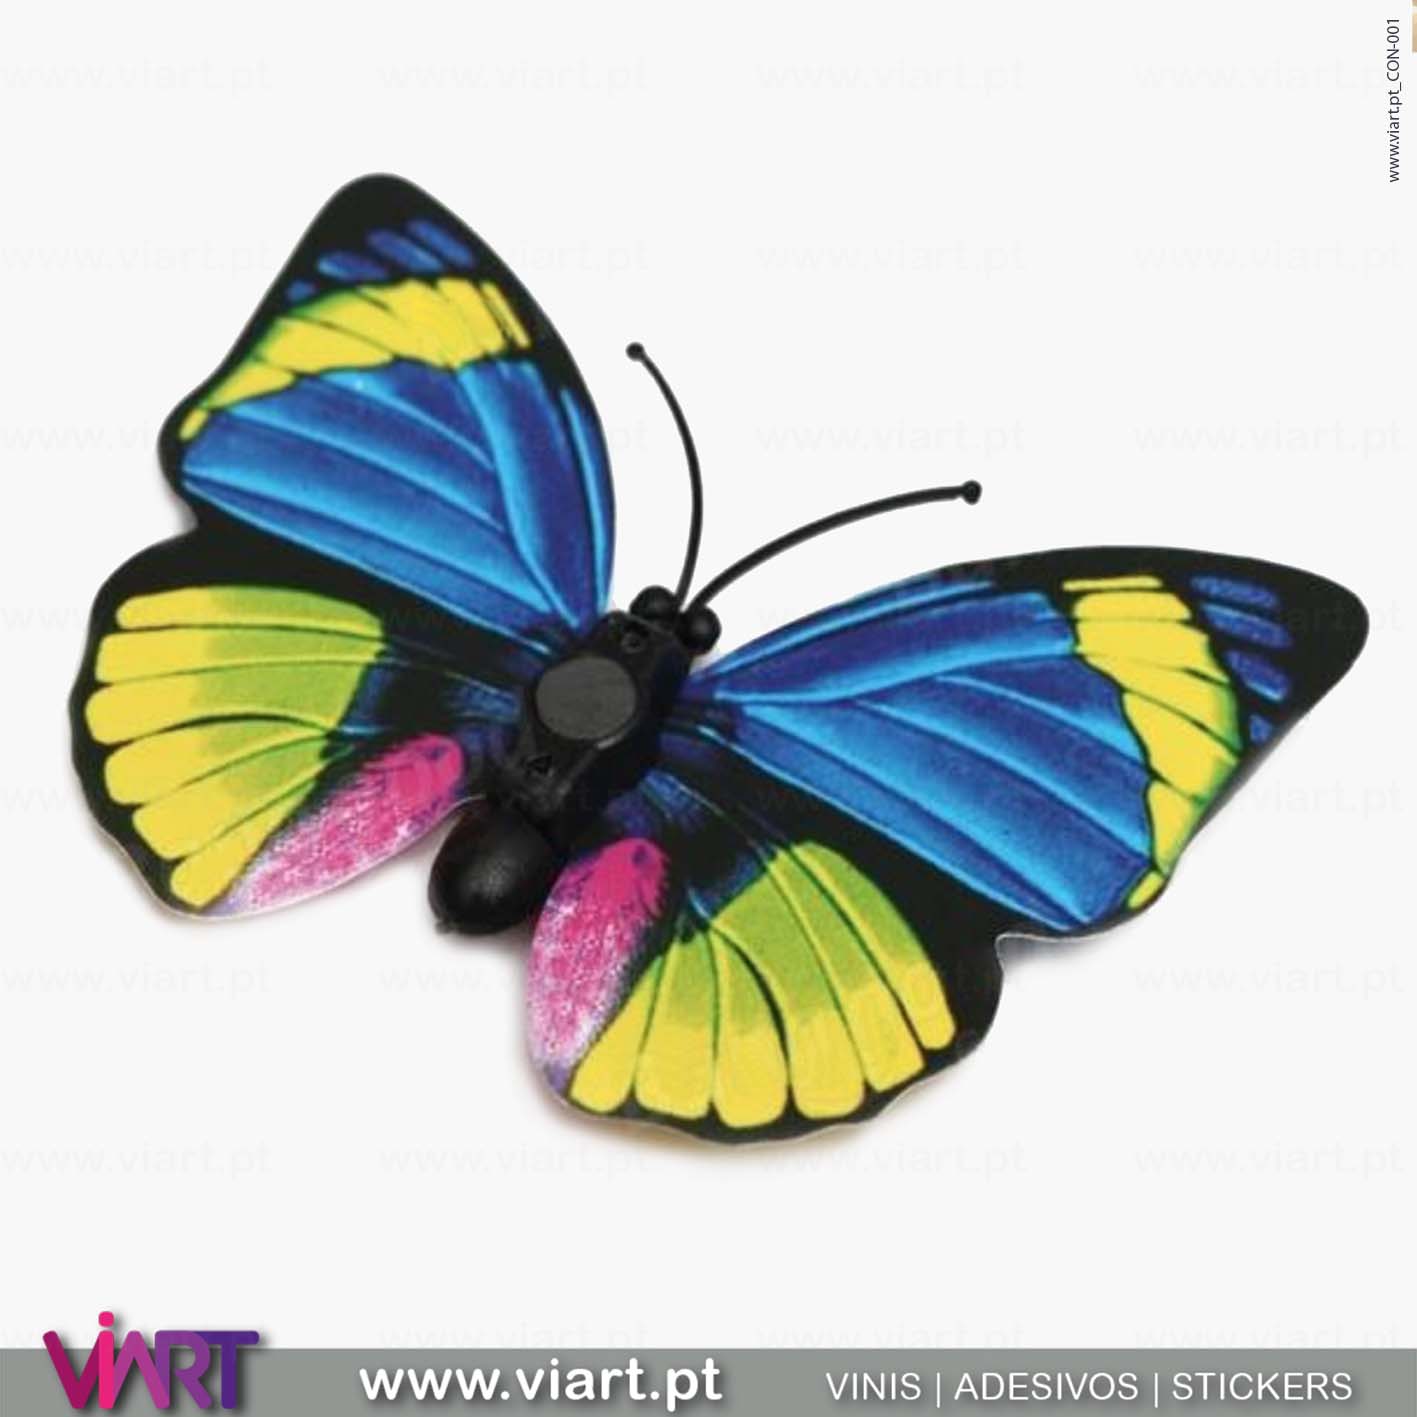 Viart - Vinis autocolantes decorativos - Adesivo decoração - Borboletas Azuis! Magnéticas! Efeito 3D